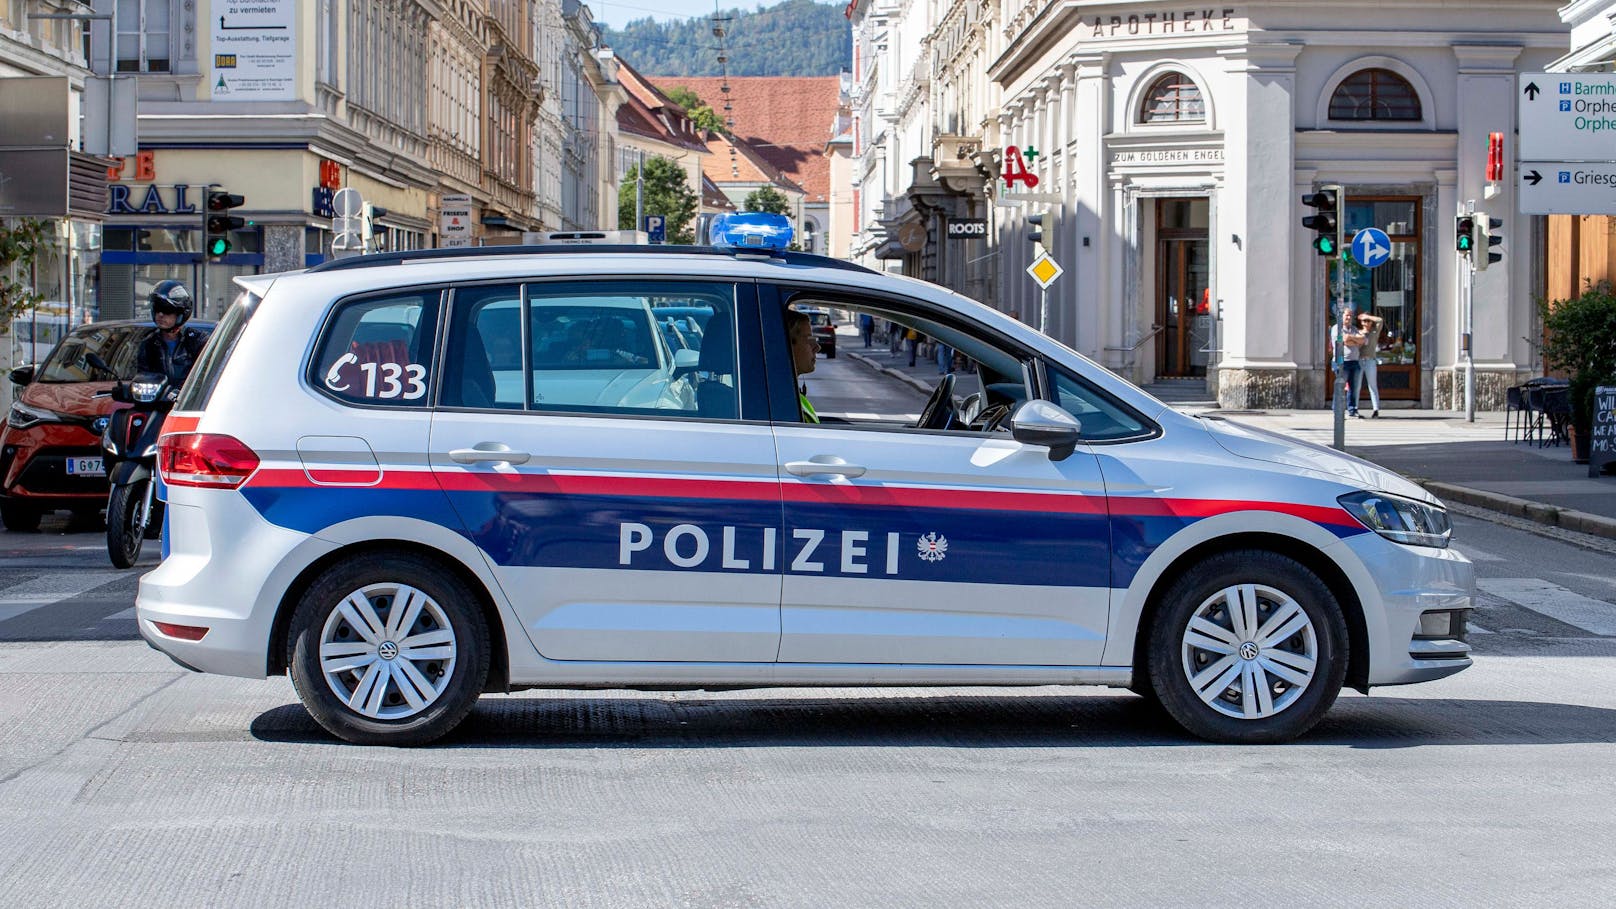 Die Polizei in Graz nahm am Sonntag einen Einbrecher fest, der im Geschäft eingeschlafen war. (Symbolbild)